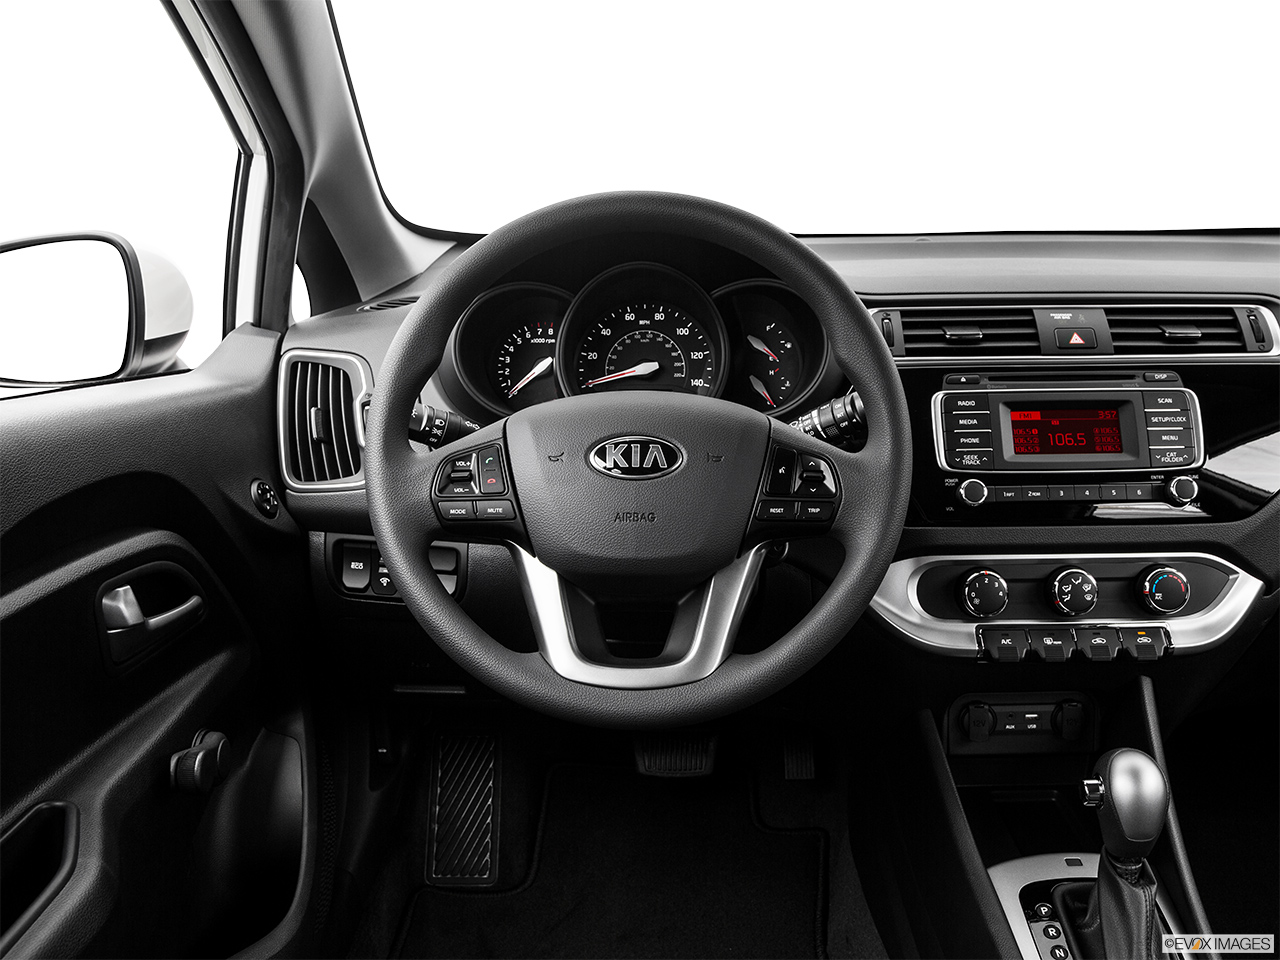 2017 Kia Rio 5-door LX Steering wheel/Center Console. 